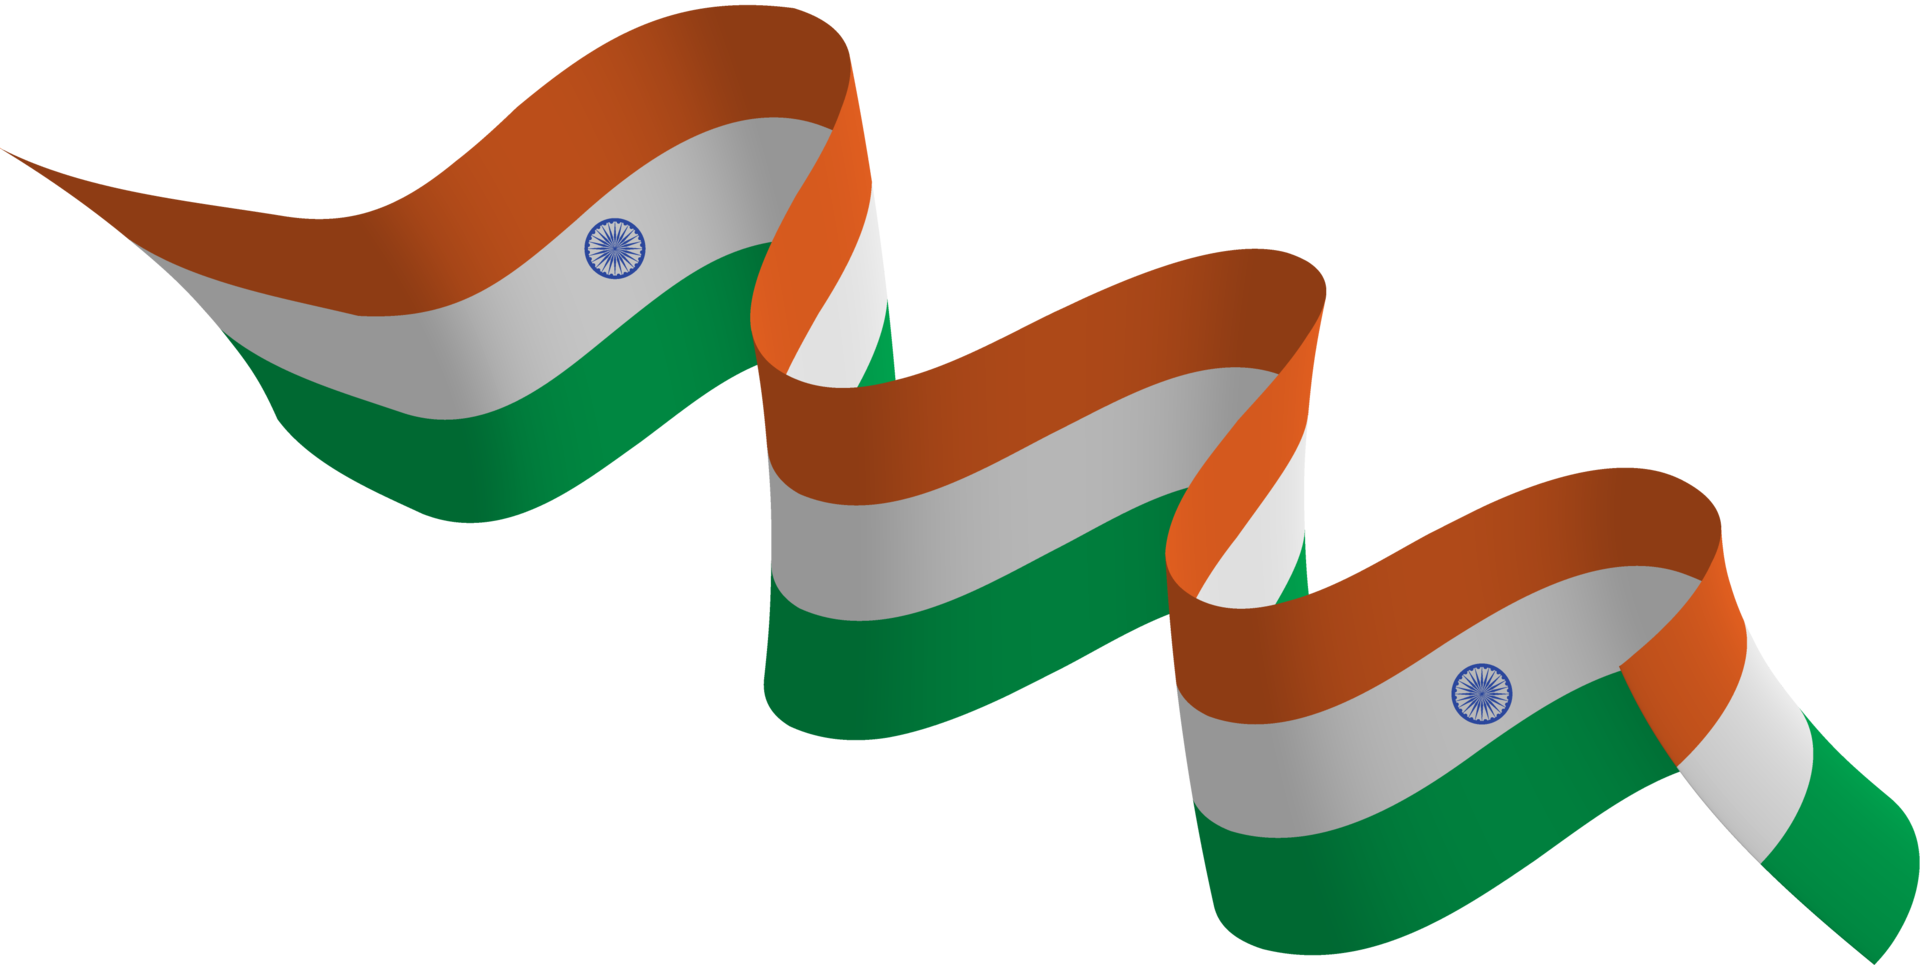 Cờ Ấn Độ với sắc màu xanh, trắng và cam có ý nghĩa rất đặc biệt. Nó tượng trưng cho sự bao trùm của các bộ phận xã hội khác nhau và cũng là biểu tượng của sự độc lập và sự thịnh vượng. Hãy cùng xem những hình ảnh về cờ Ấn Độ đặc biệt này để hiểu rõ hơn về chúng.